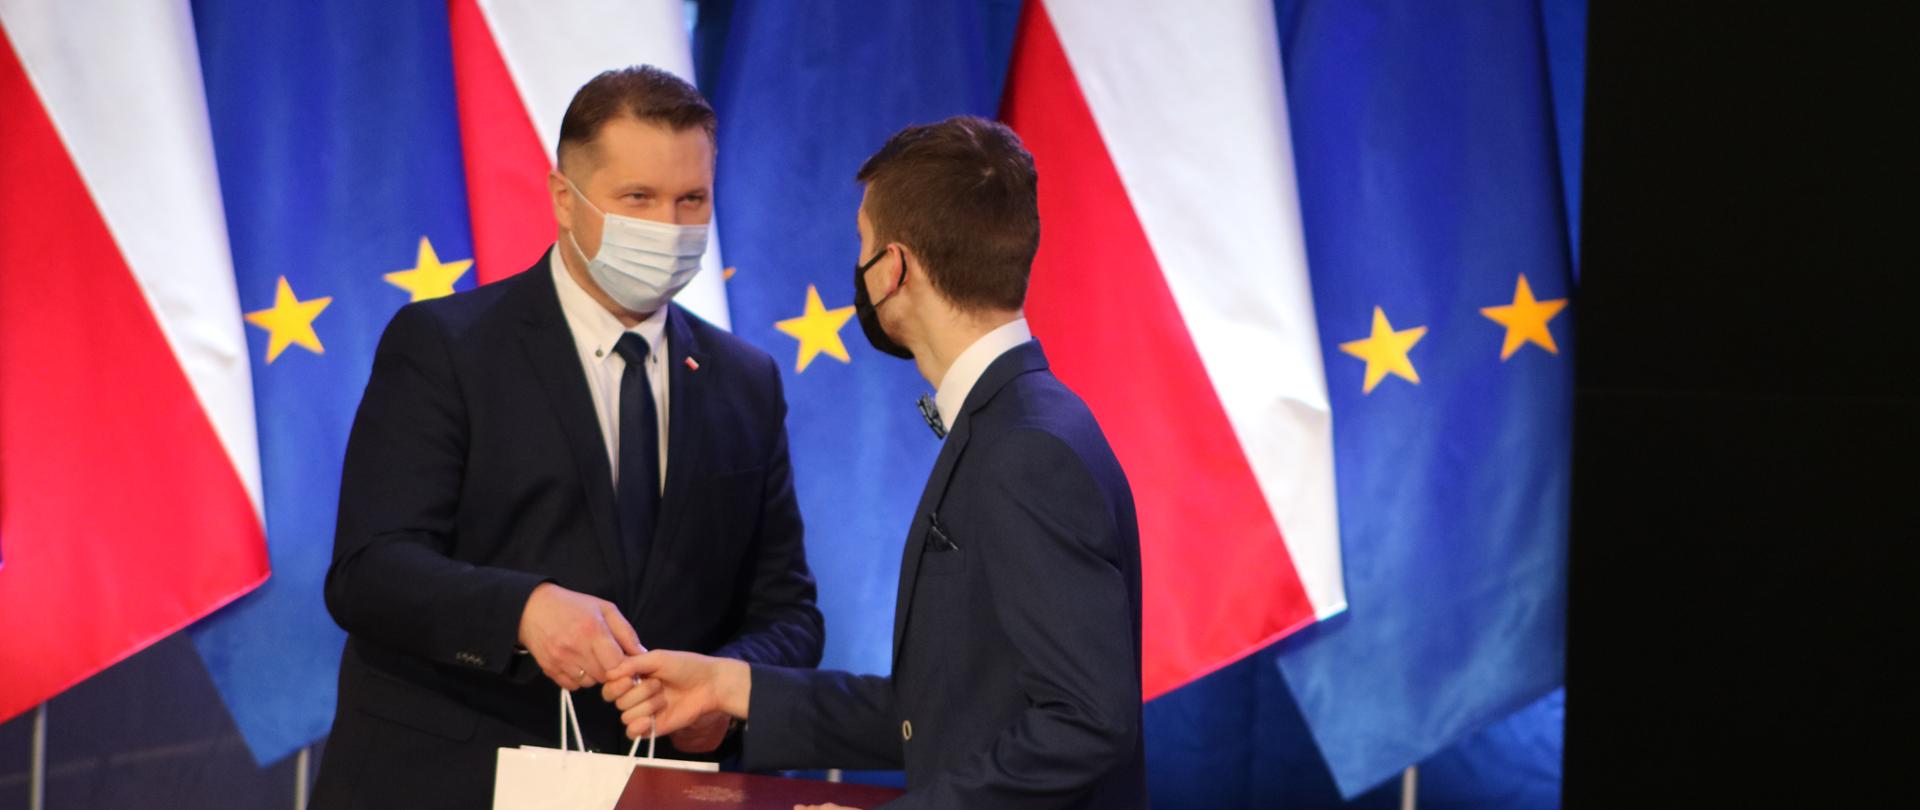 Minister Przemysław Czarnek wręcza upominek i dyplom chłopcu ubranemu w garnitur. Obaj mają na twarzach maseczki. W tle flagi polskie i unijne. 